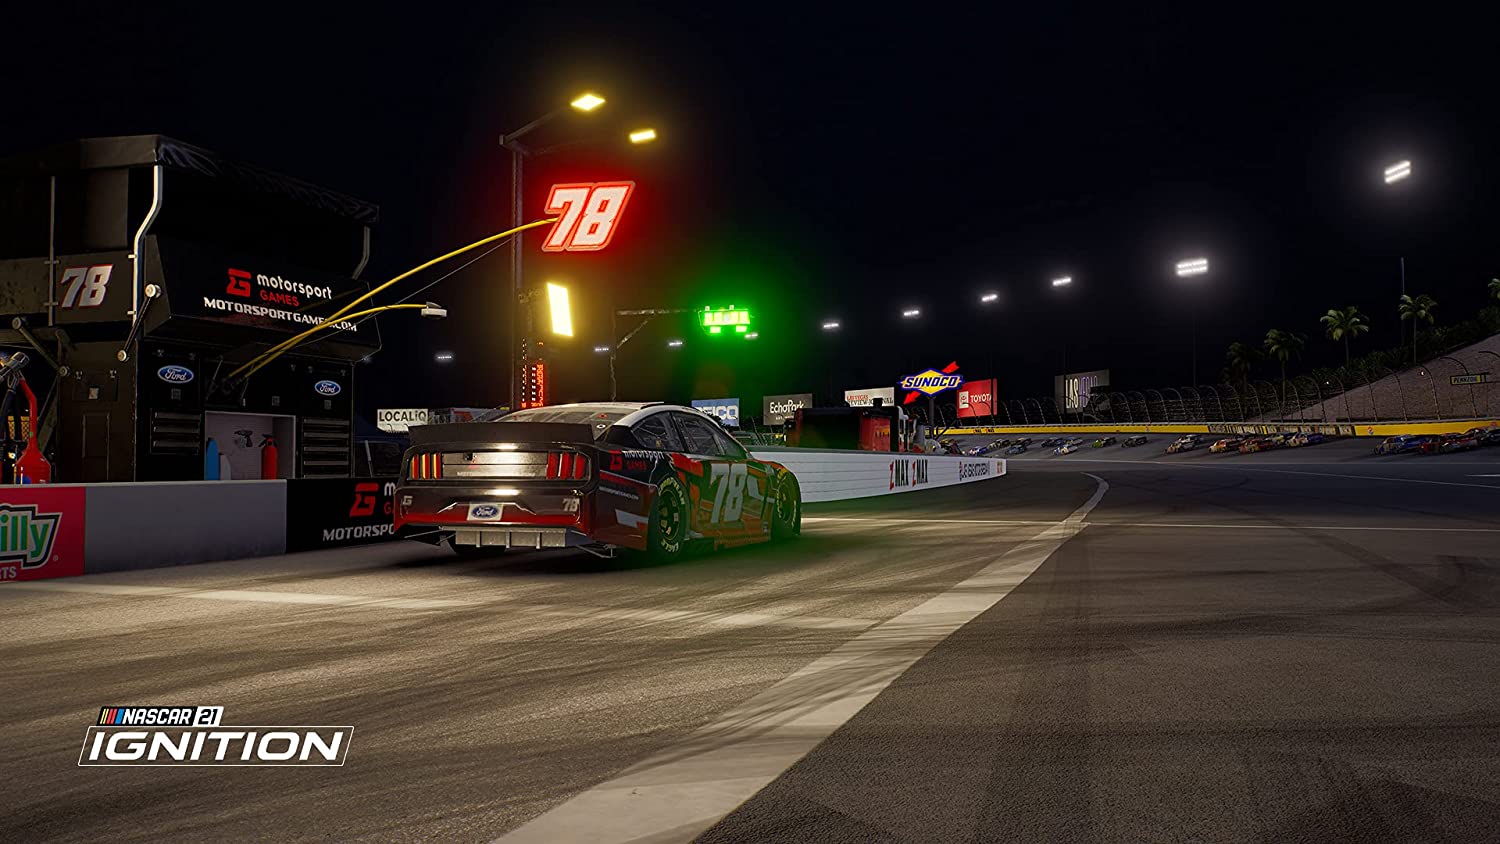 NASCAR-21-Ignition-PS4-bazaar-bazaar-com-1